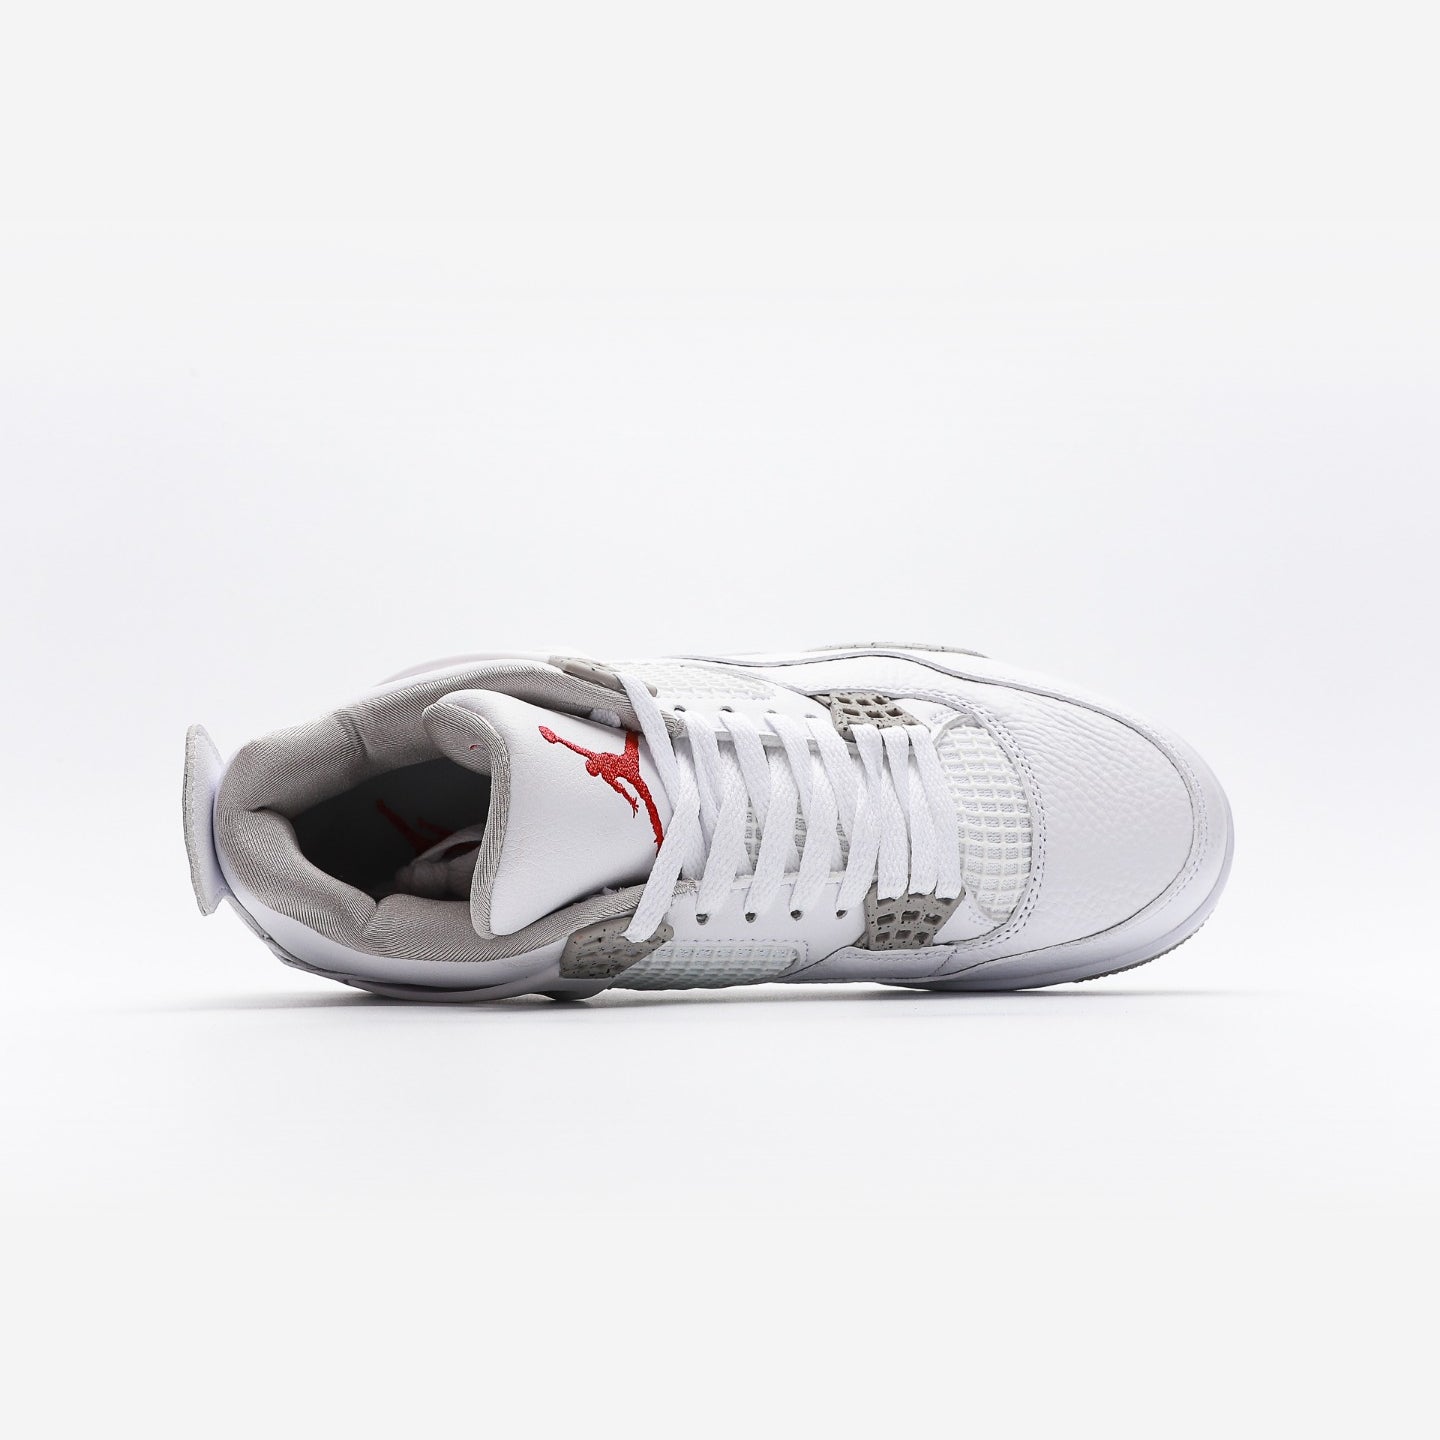 Air Jordan 4 Retro White Oreo - Urbanize Streetwear